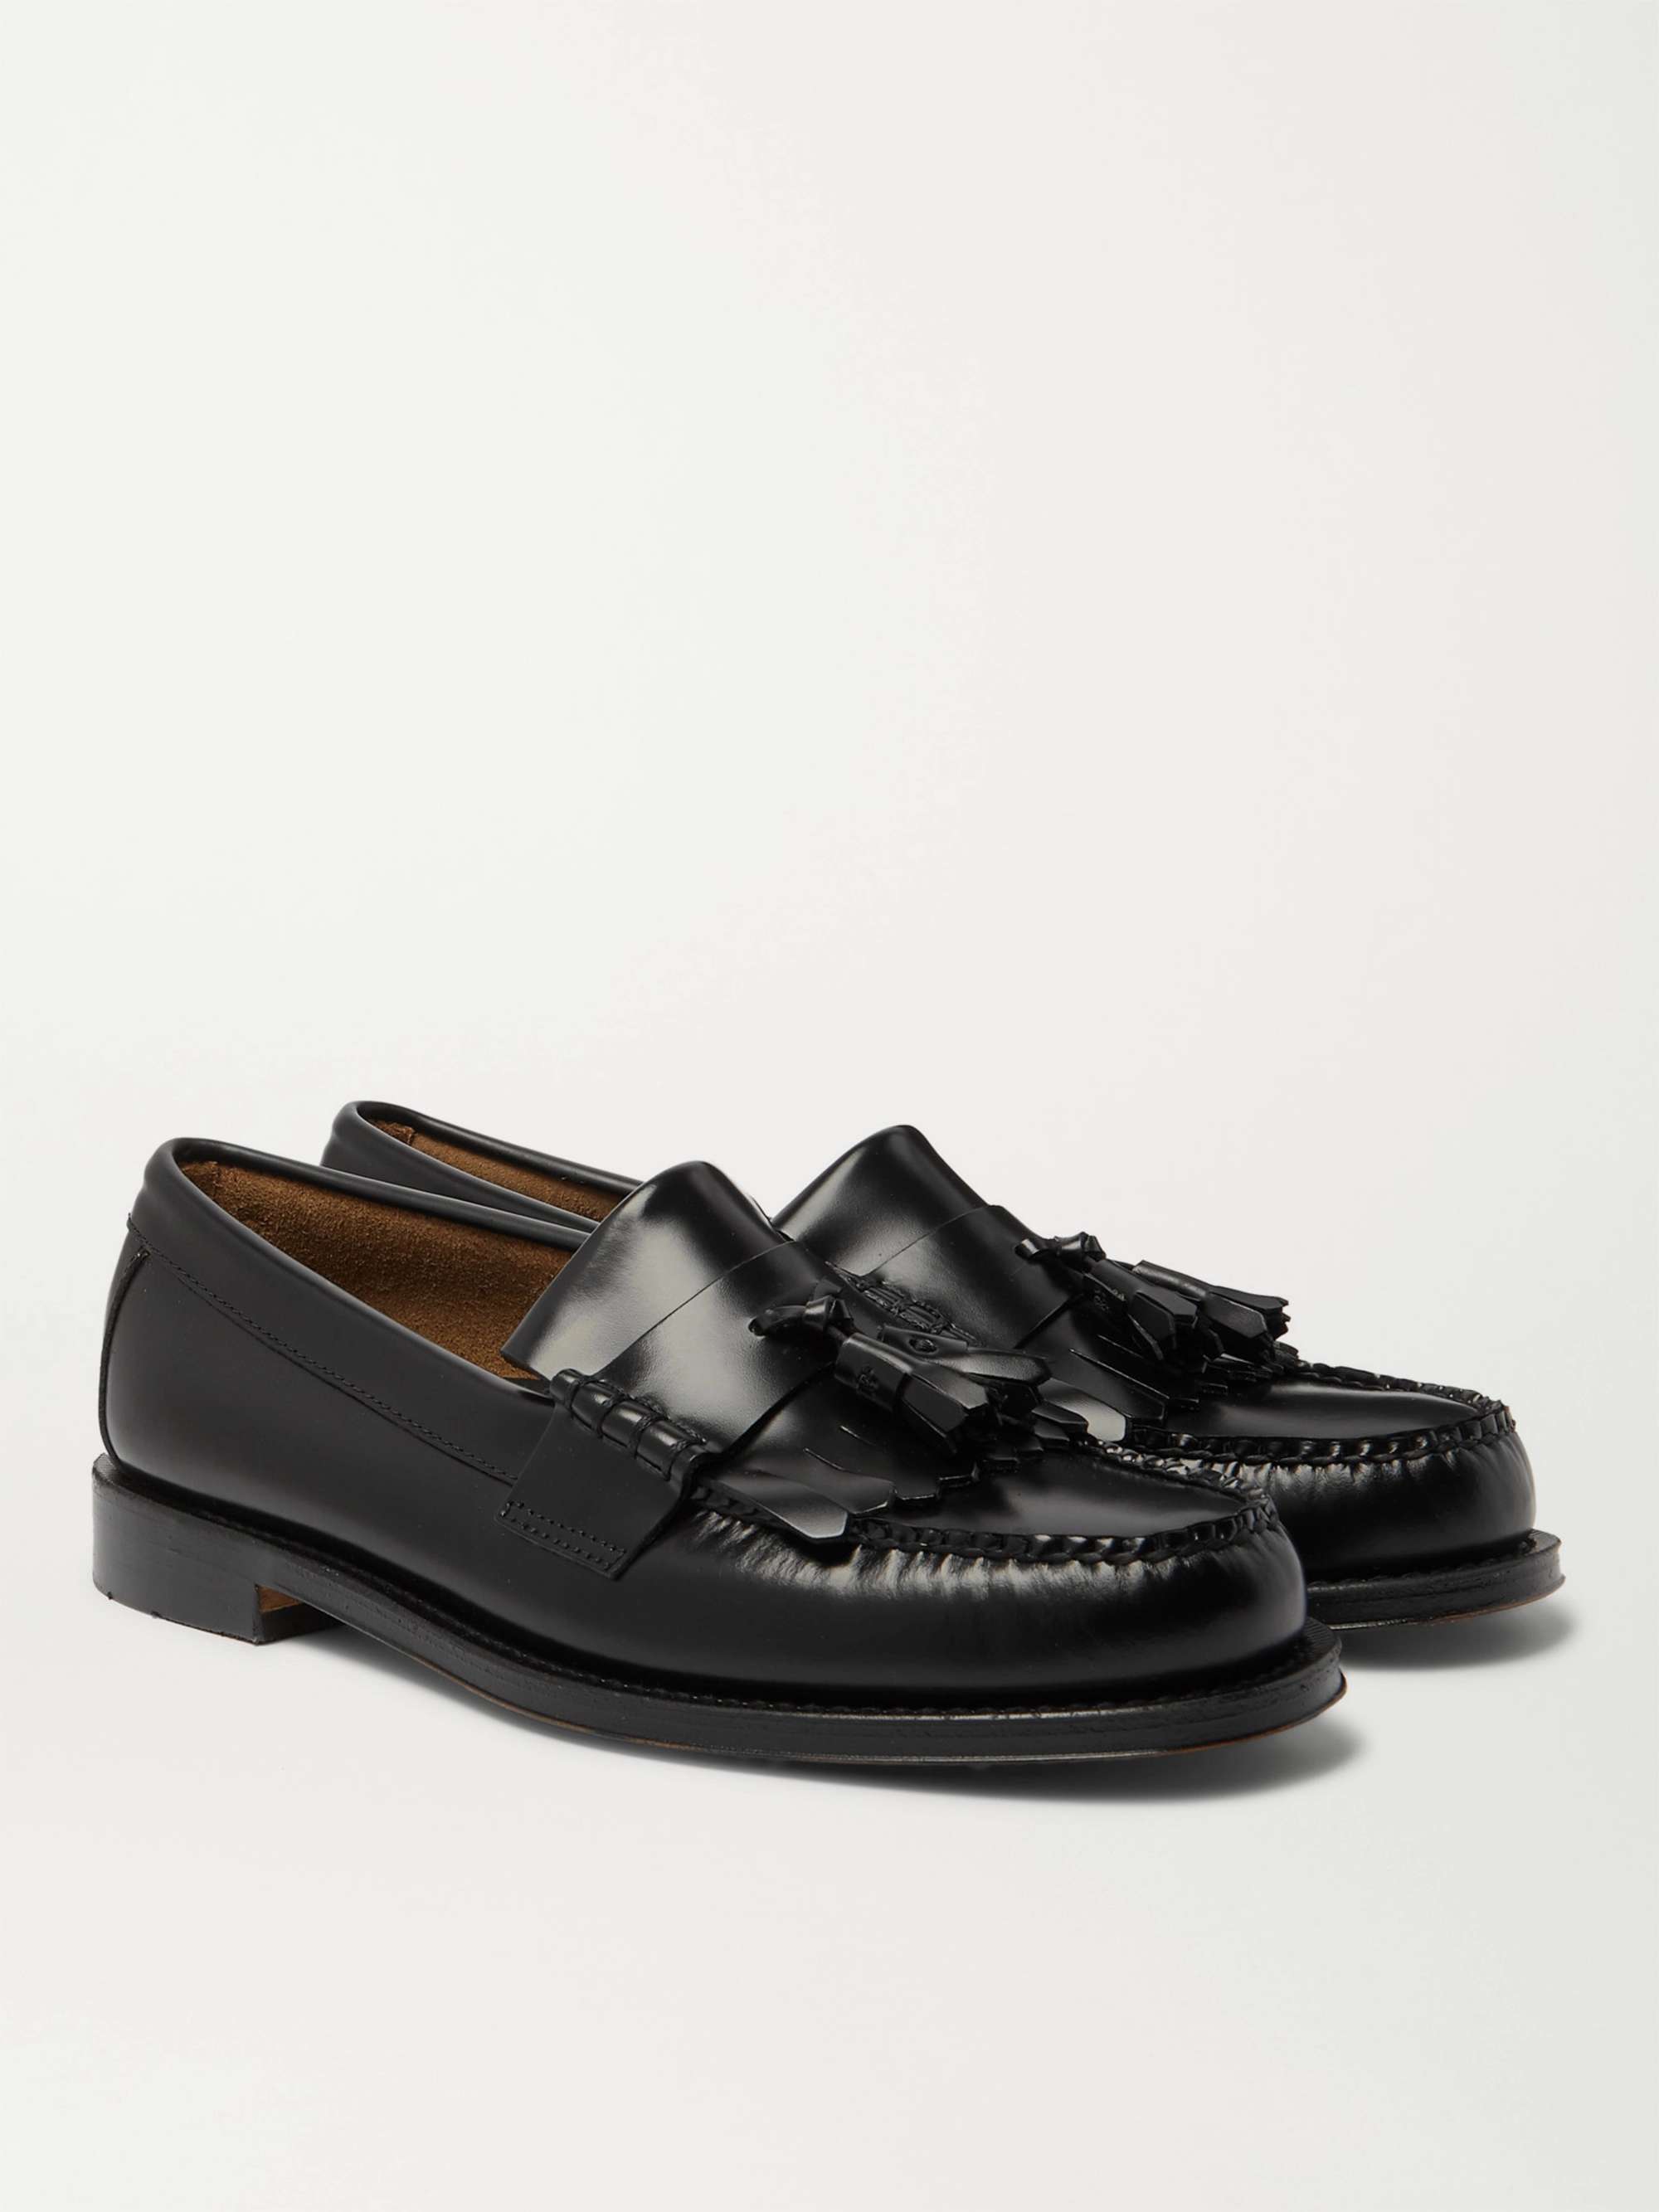 Black Weejuns Layton Kiltie Moc II Leather Tasselled Loafers | G.H